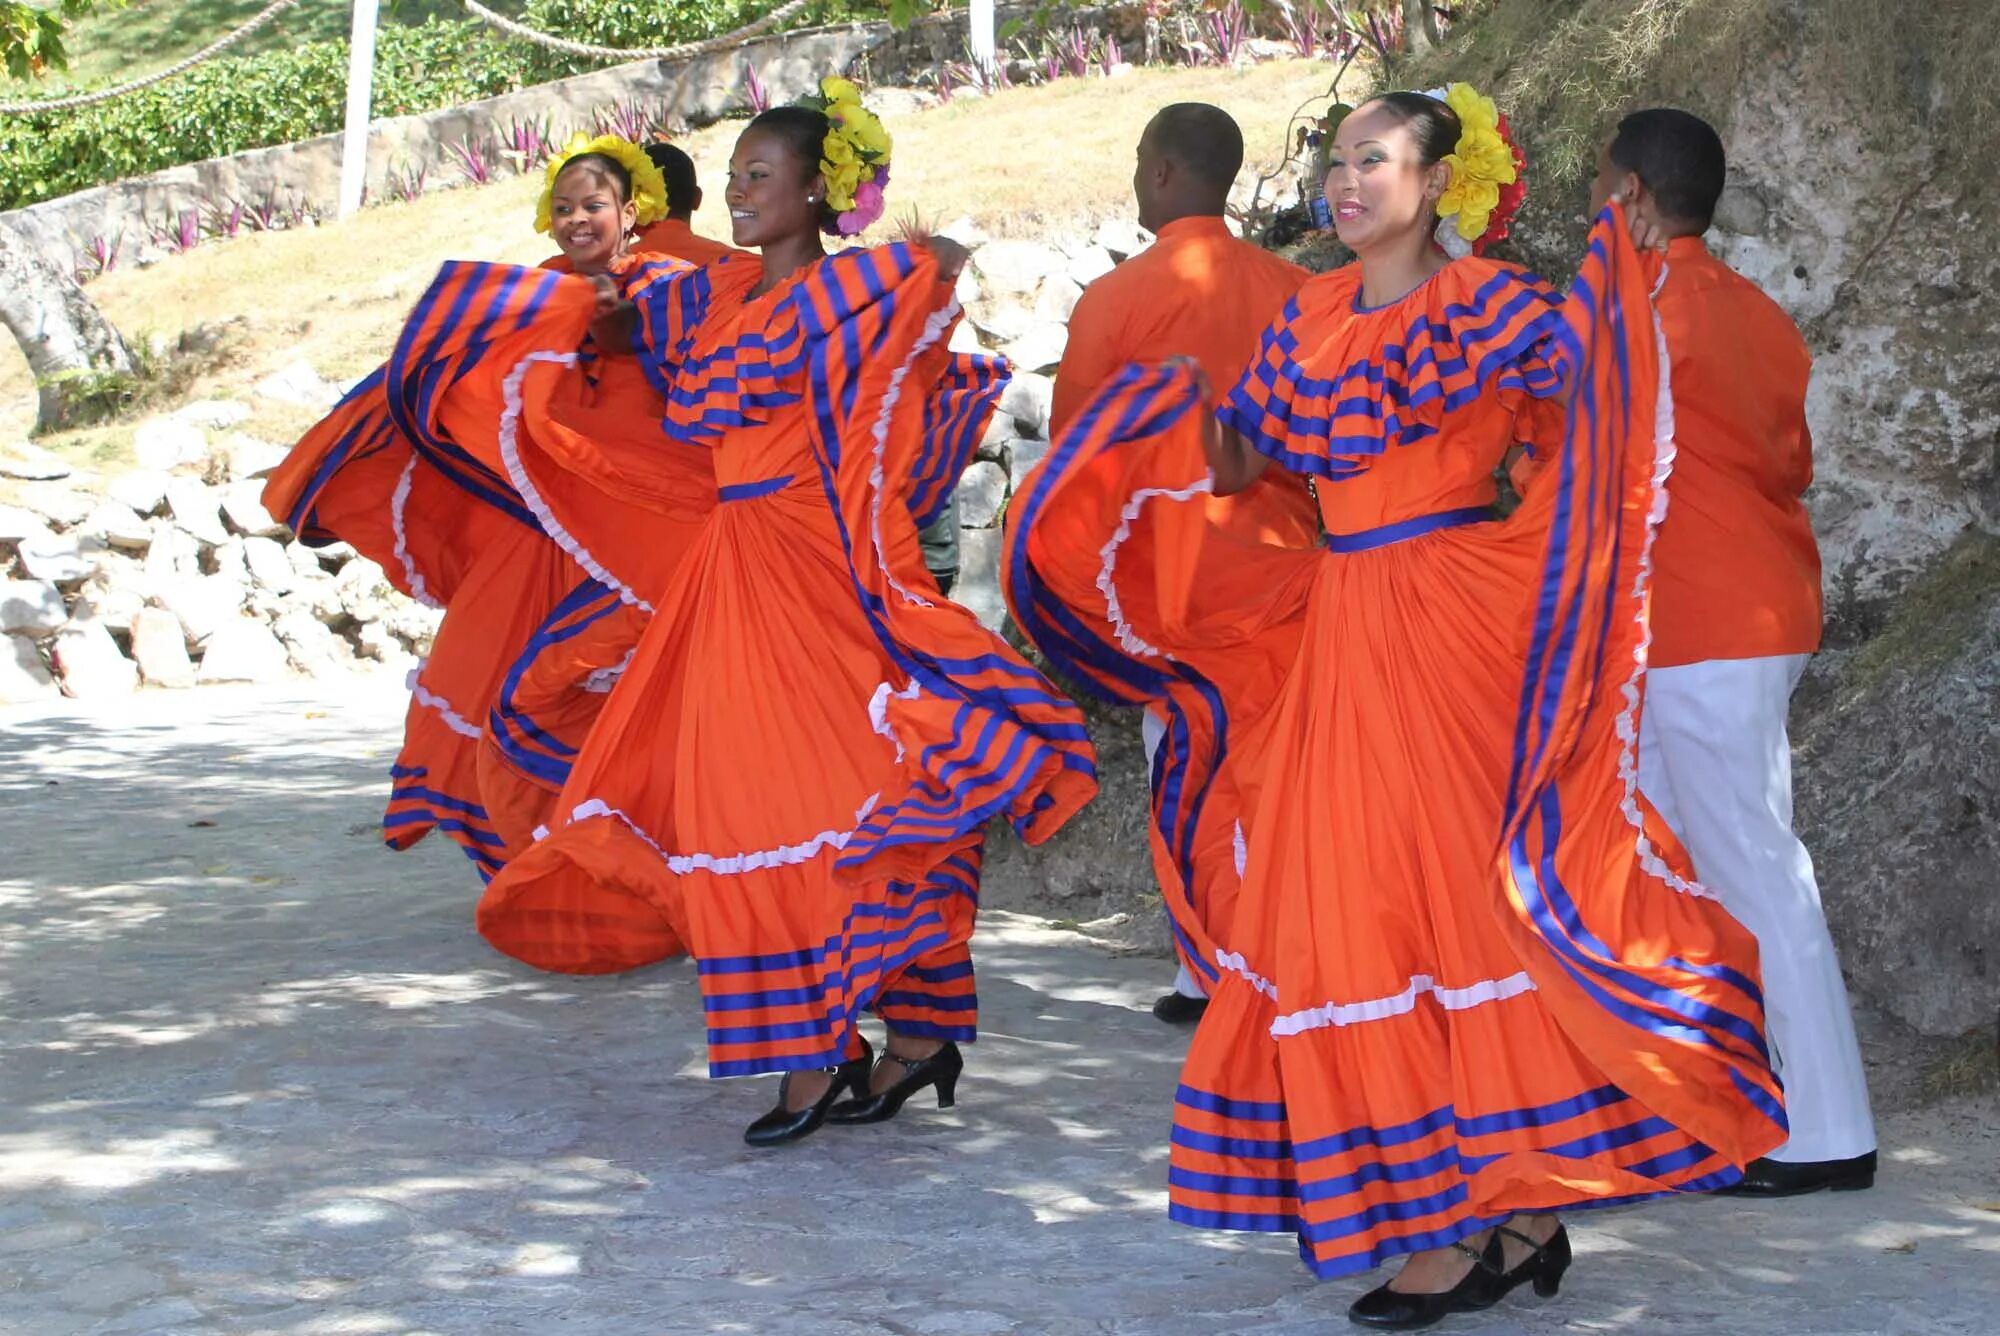 Меренге танец. Меренге танец Доминикана. Танец меренге в Доминикане. Коста Рика танец меренге. Национальный костюм Доминиканской Республики.